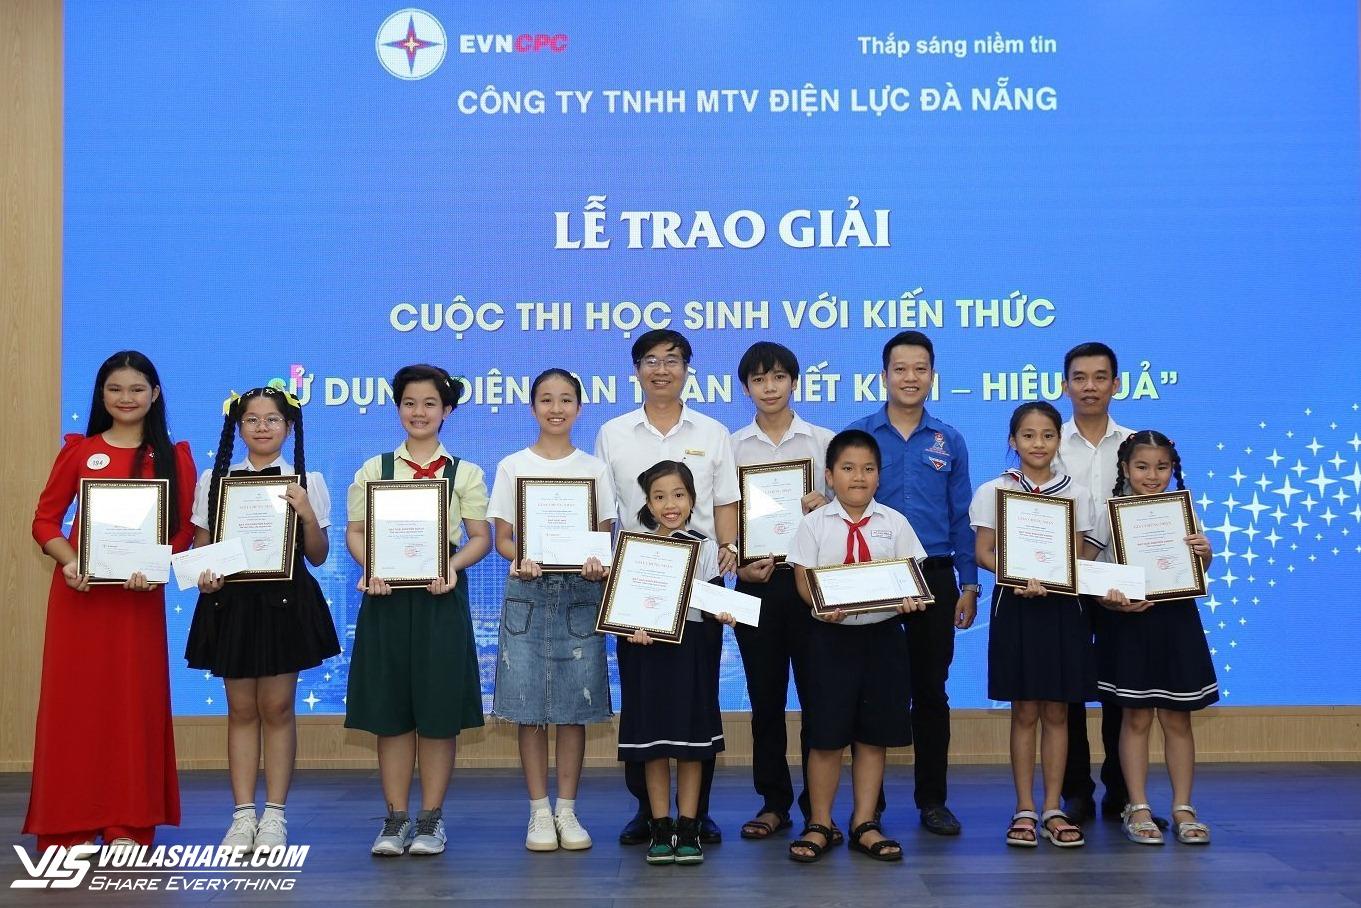 PC Đà Nẵng trao giải ‘Học sinh với kiến thức sử dụng điện an toàn, tiết kiệm’- Ảnh 1.